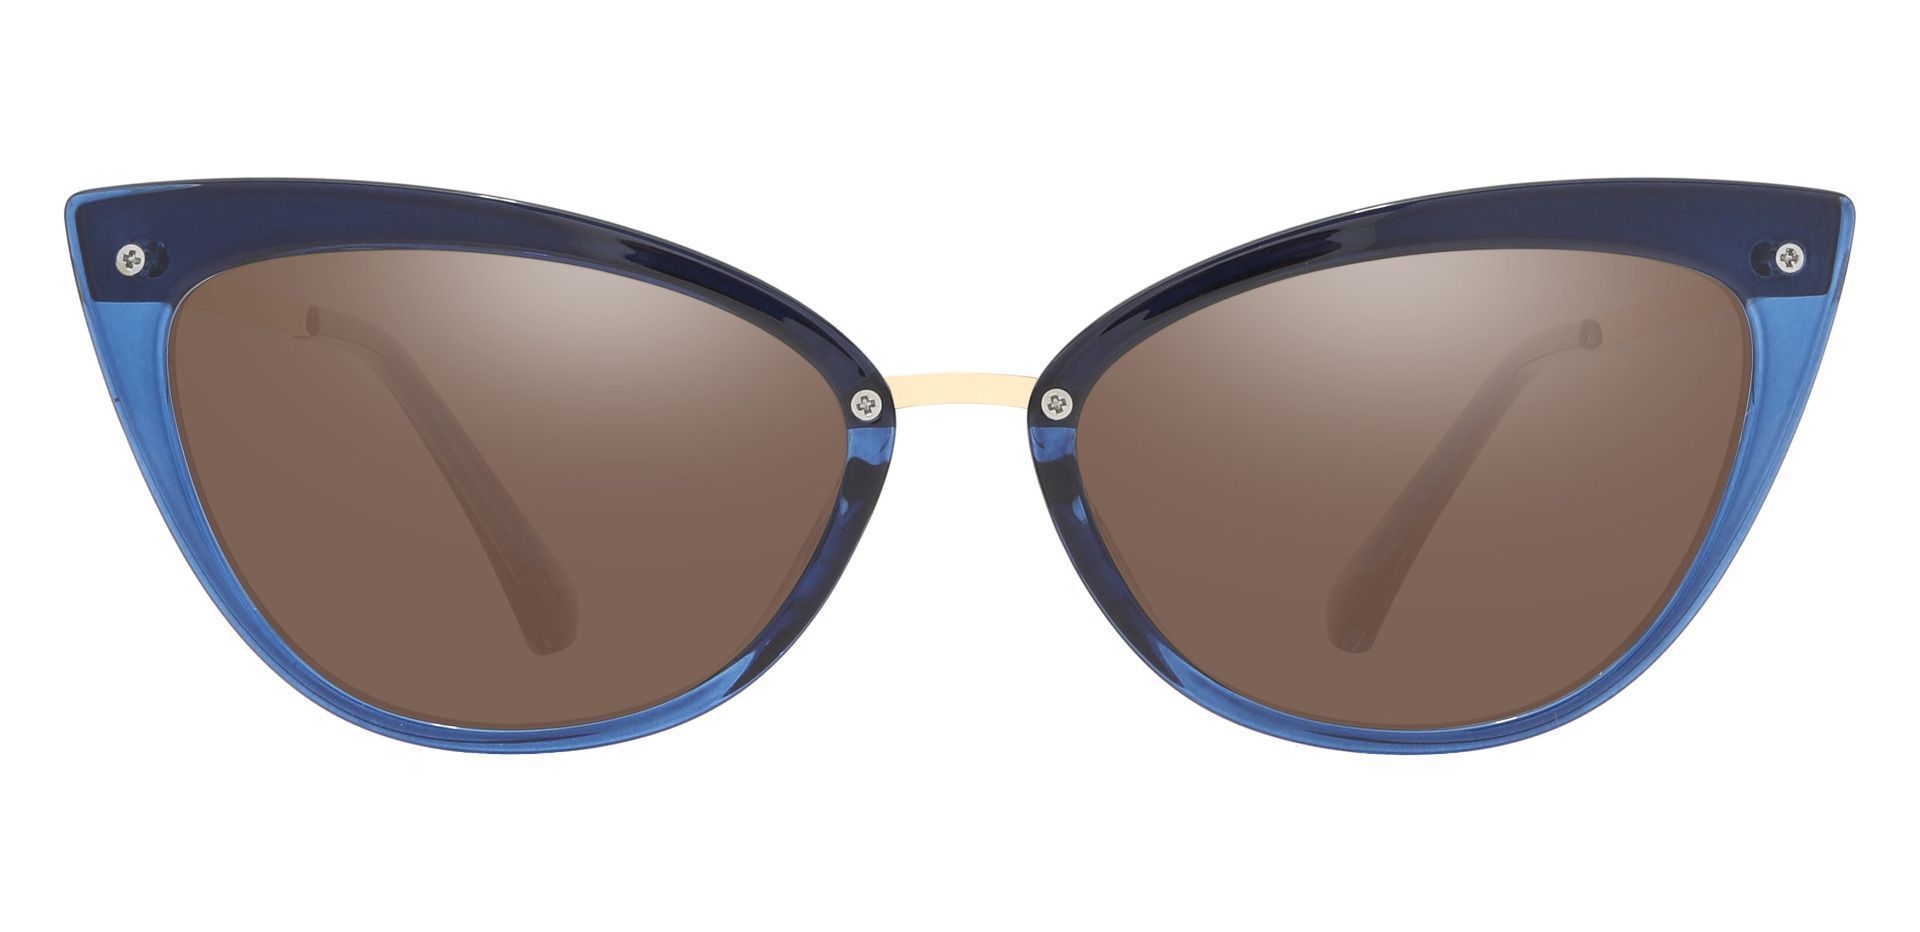 Glenda Cat Eye Prescription Sunglasses - Blue Frame With Brown Lenses